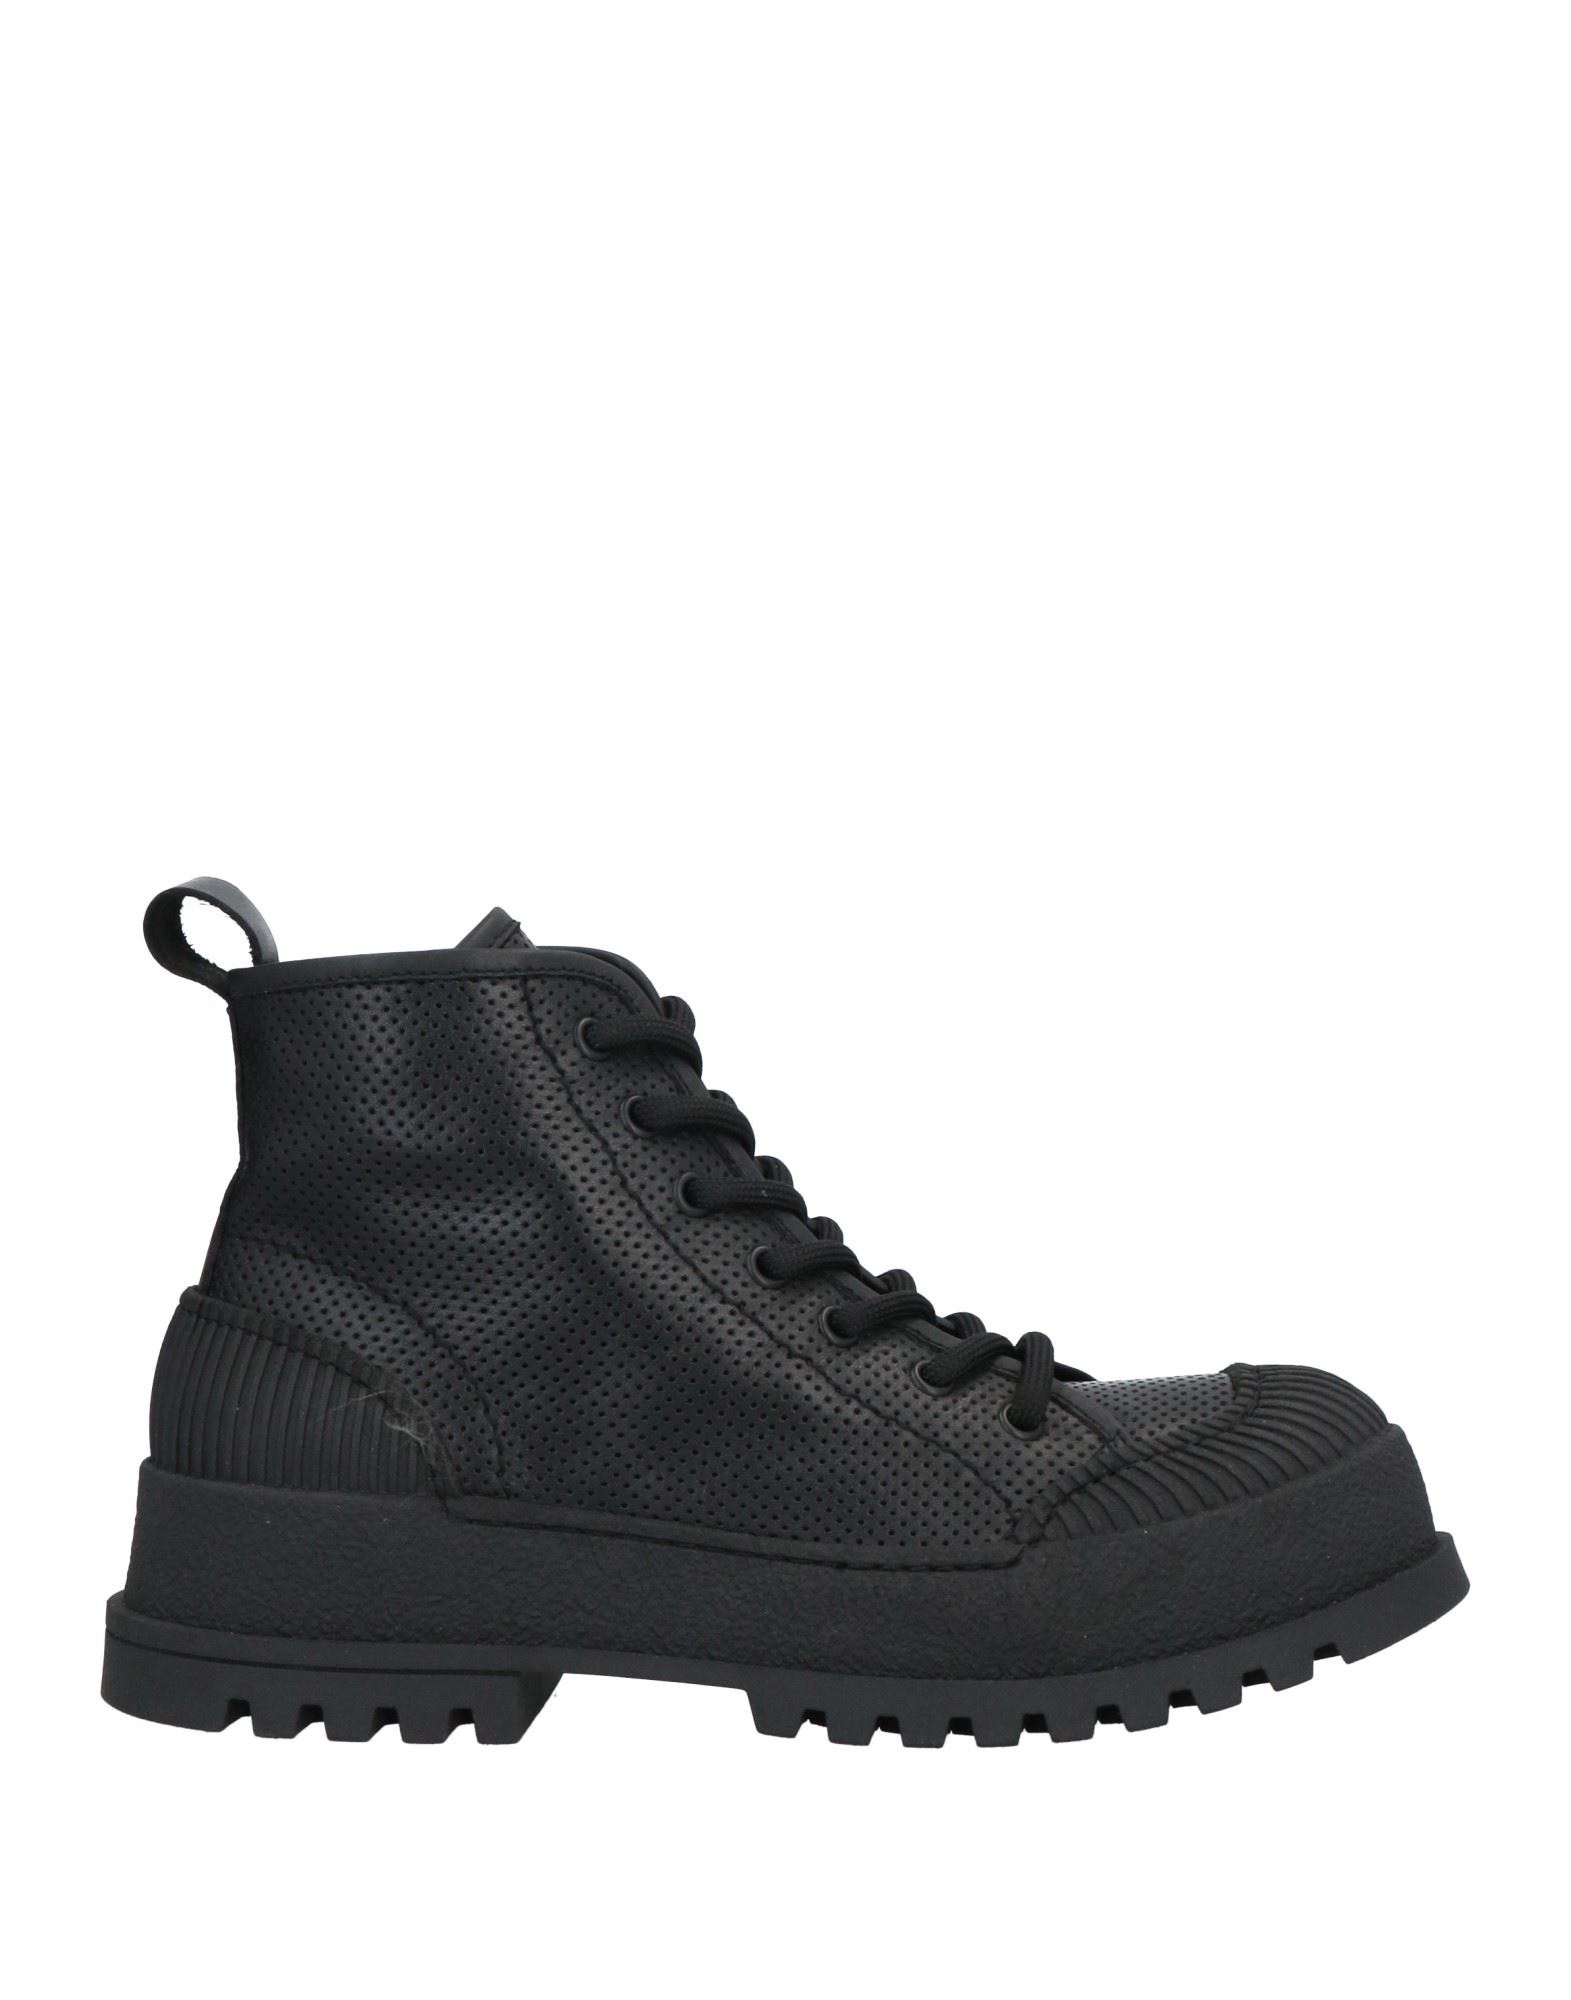 Shop Mich E Simon Mich Simon Woman Ankle Boots Black Size 11 Leather